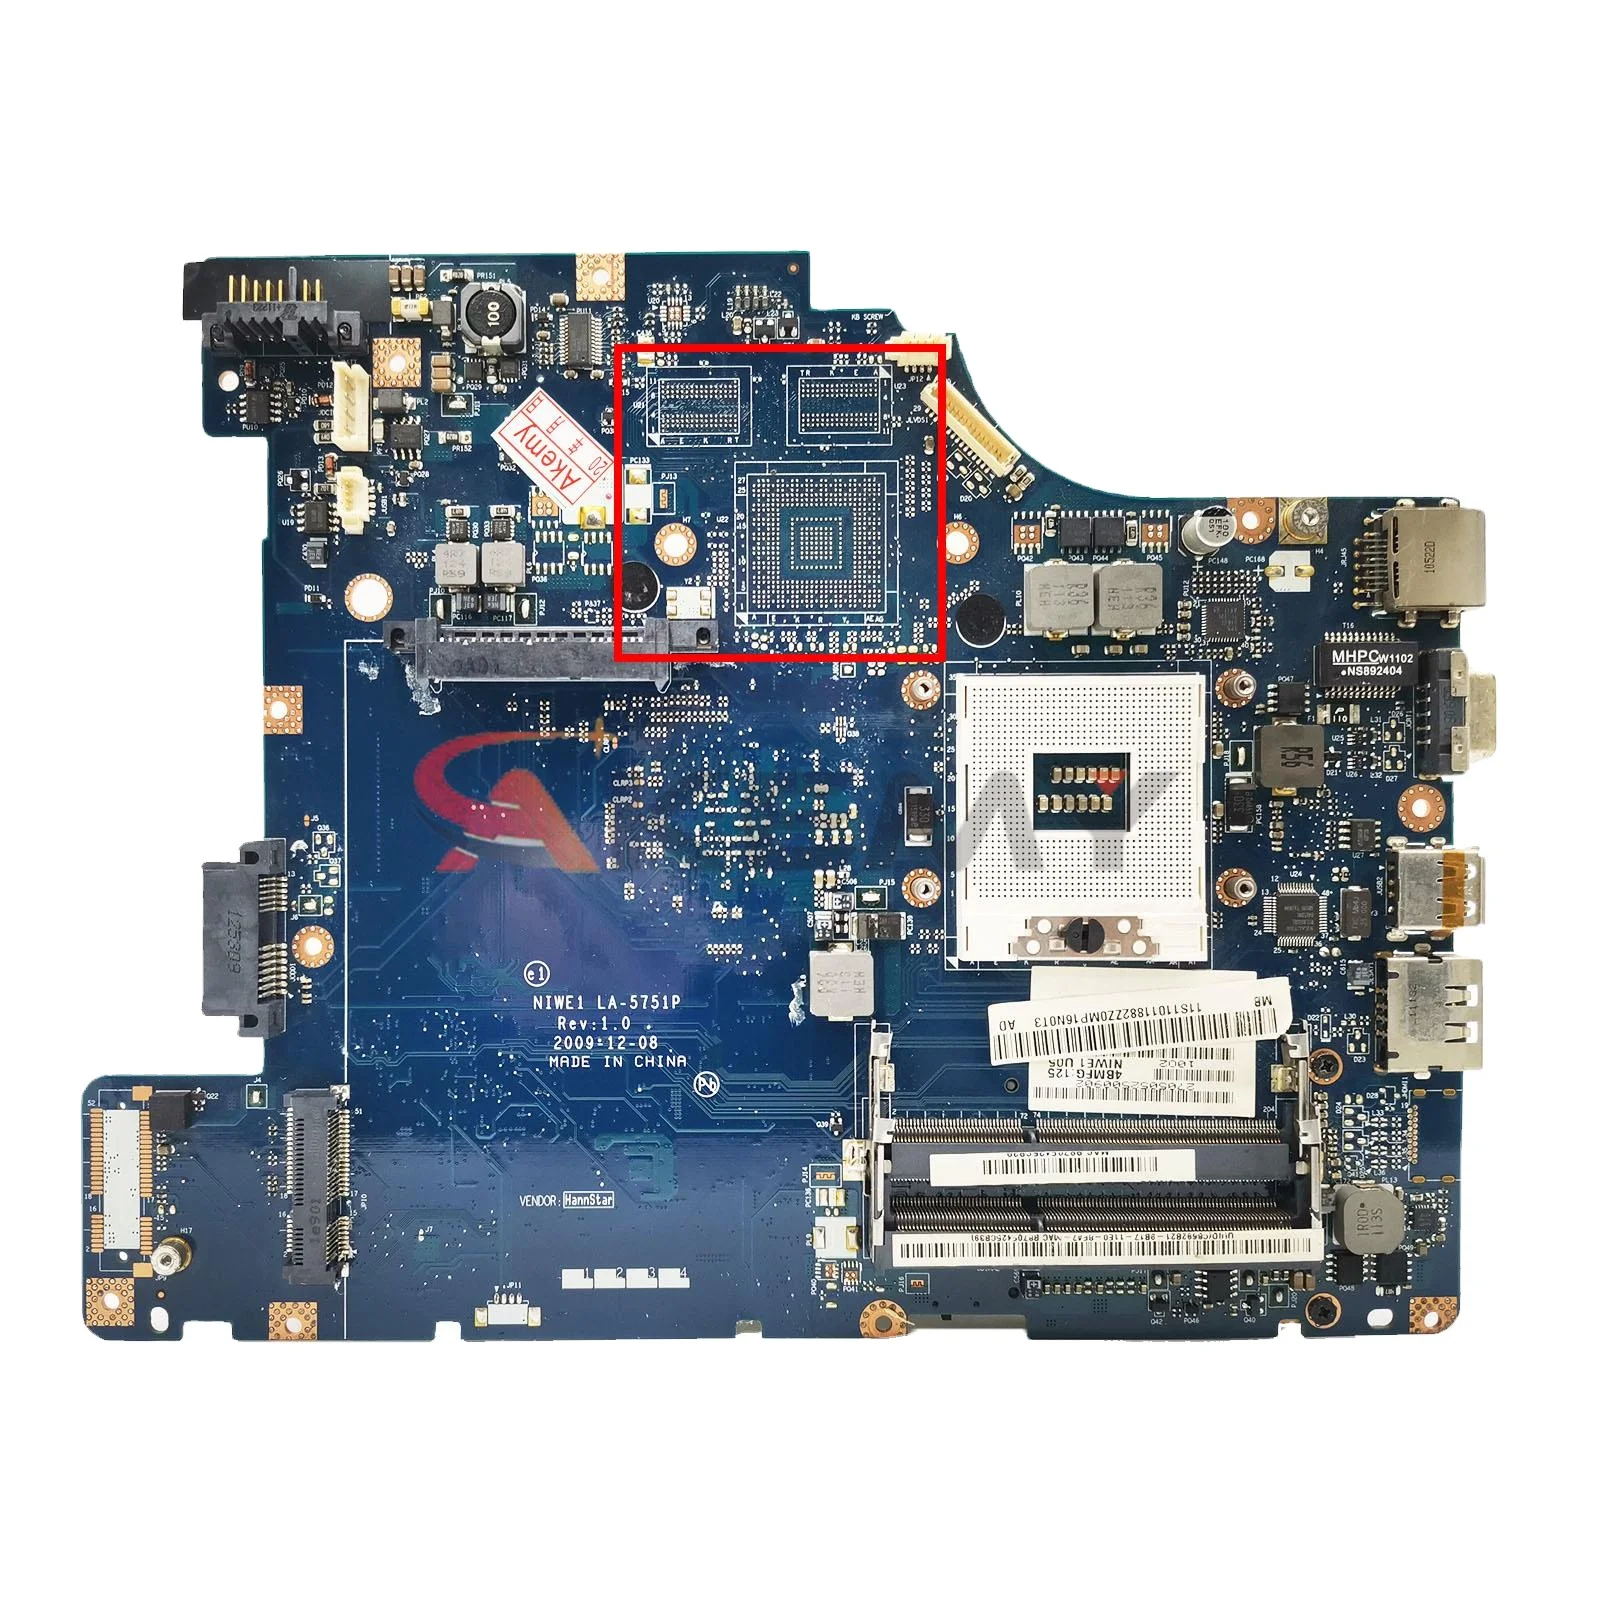 

NIWE1 LA-5751P original For Lenovo G460 Z460 Laptop motherboard G460 Z460 Mainboard LA-5751P SLGZS HM55 DDR3 100% teste